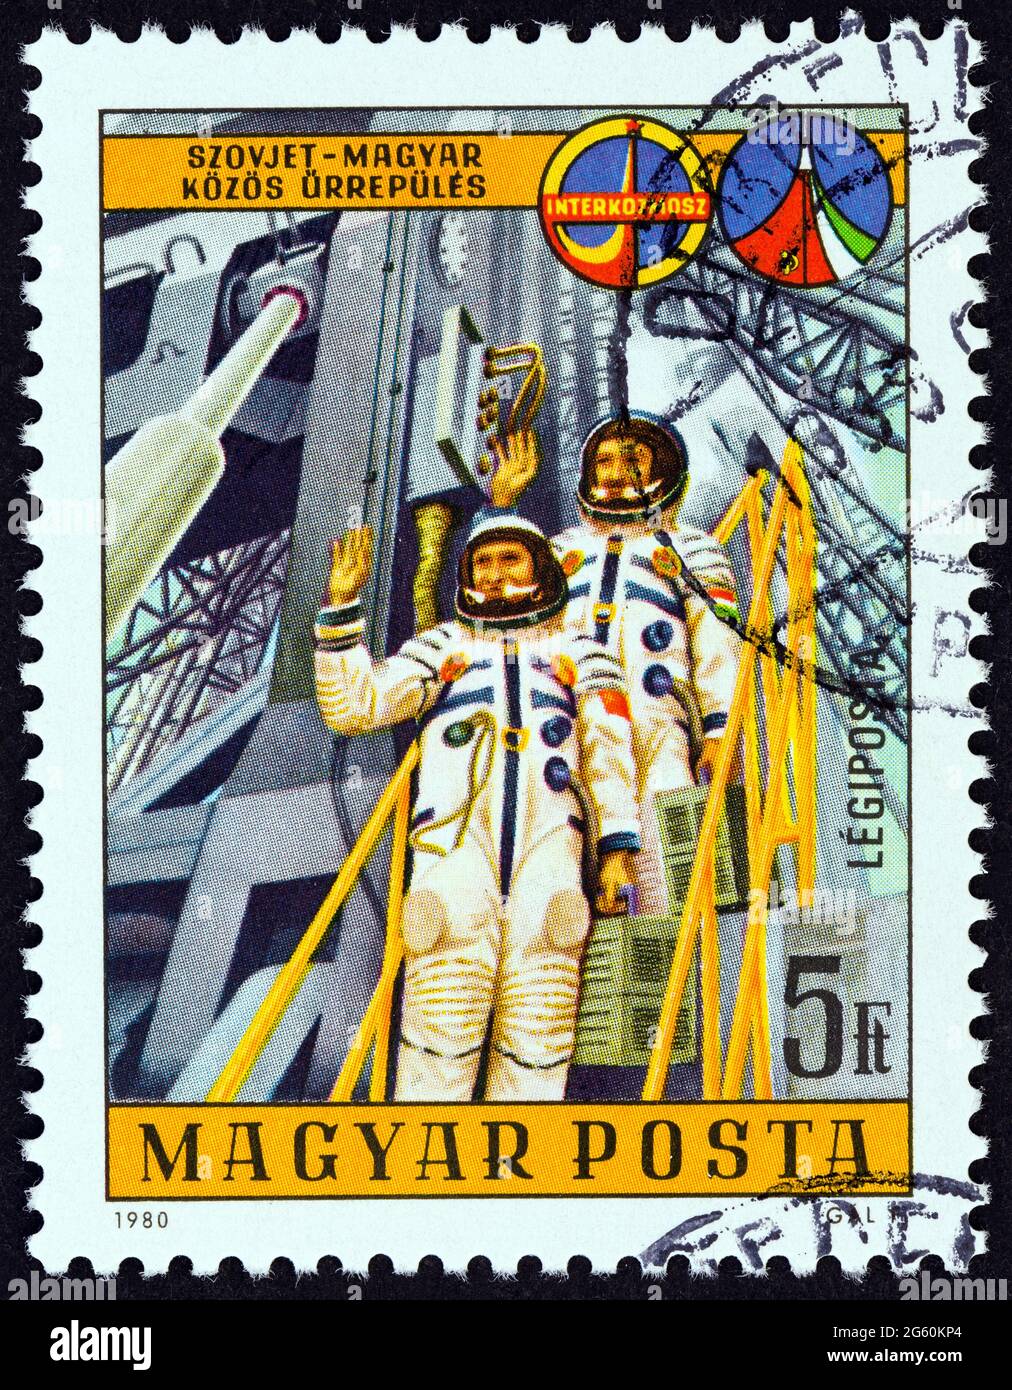 UNGARN - UM 1980: Eine in Ungarn gedruckte Briefmarke, die für das sowjetisch-ungarische Raumfahrtprogramm Interkosmos ausgegeben wurde, zeigt sowjetische und ungarische Kosmonauten. Stockfoto